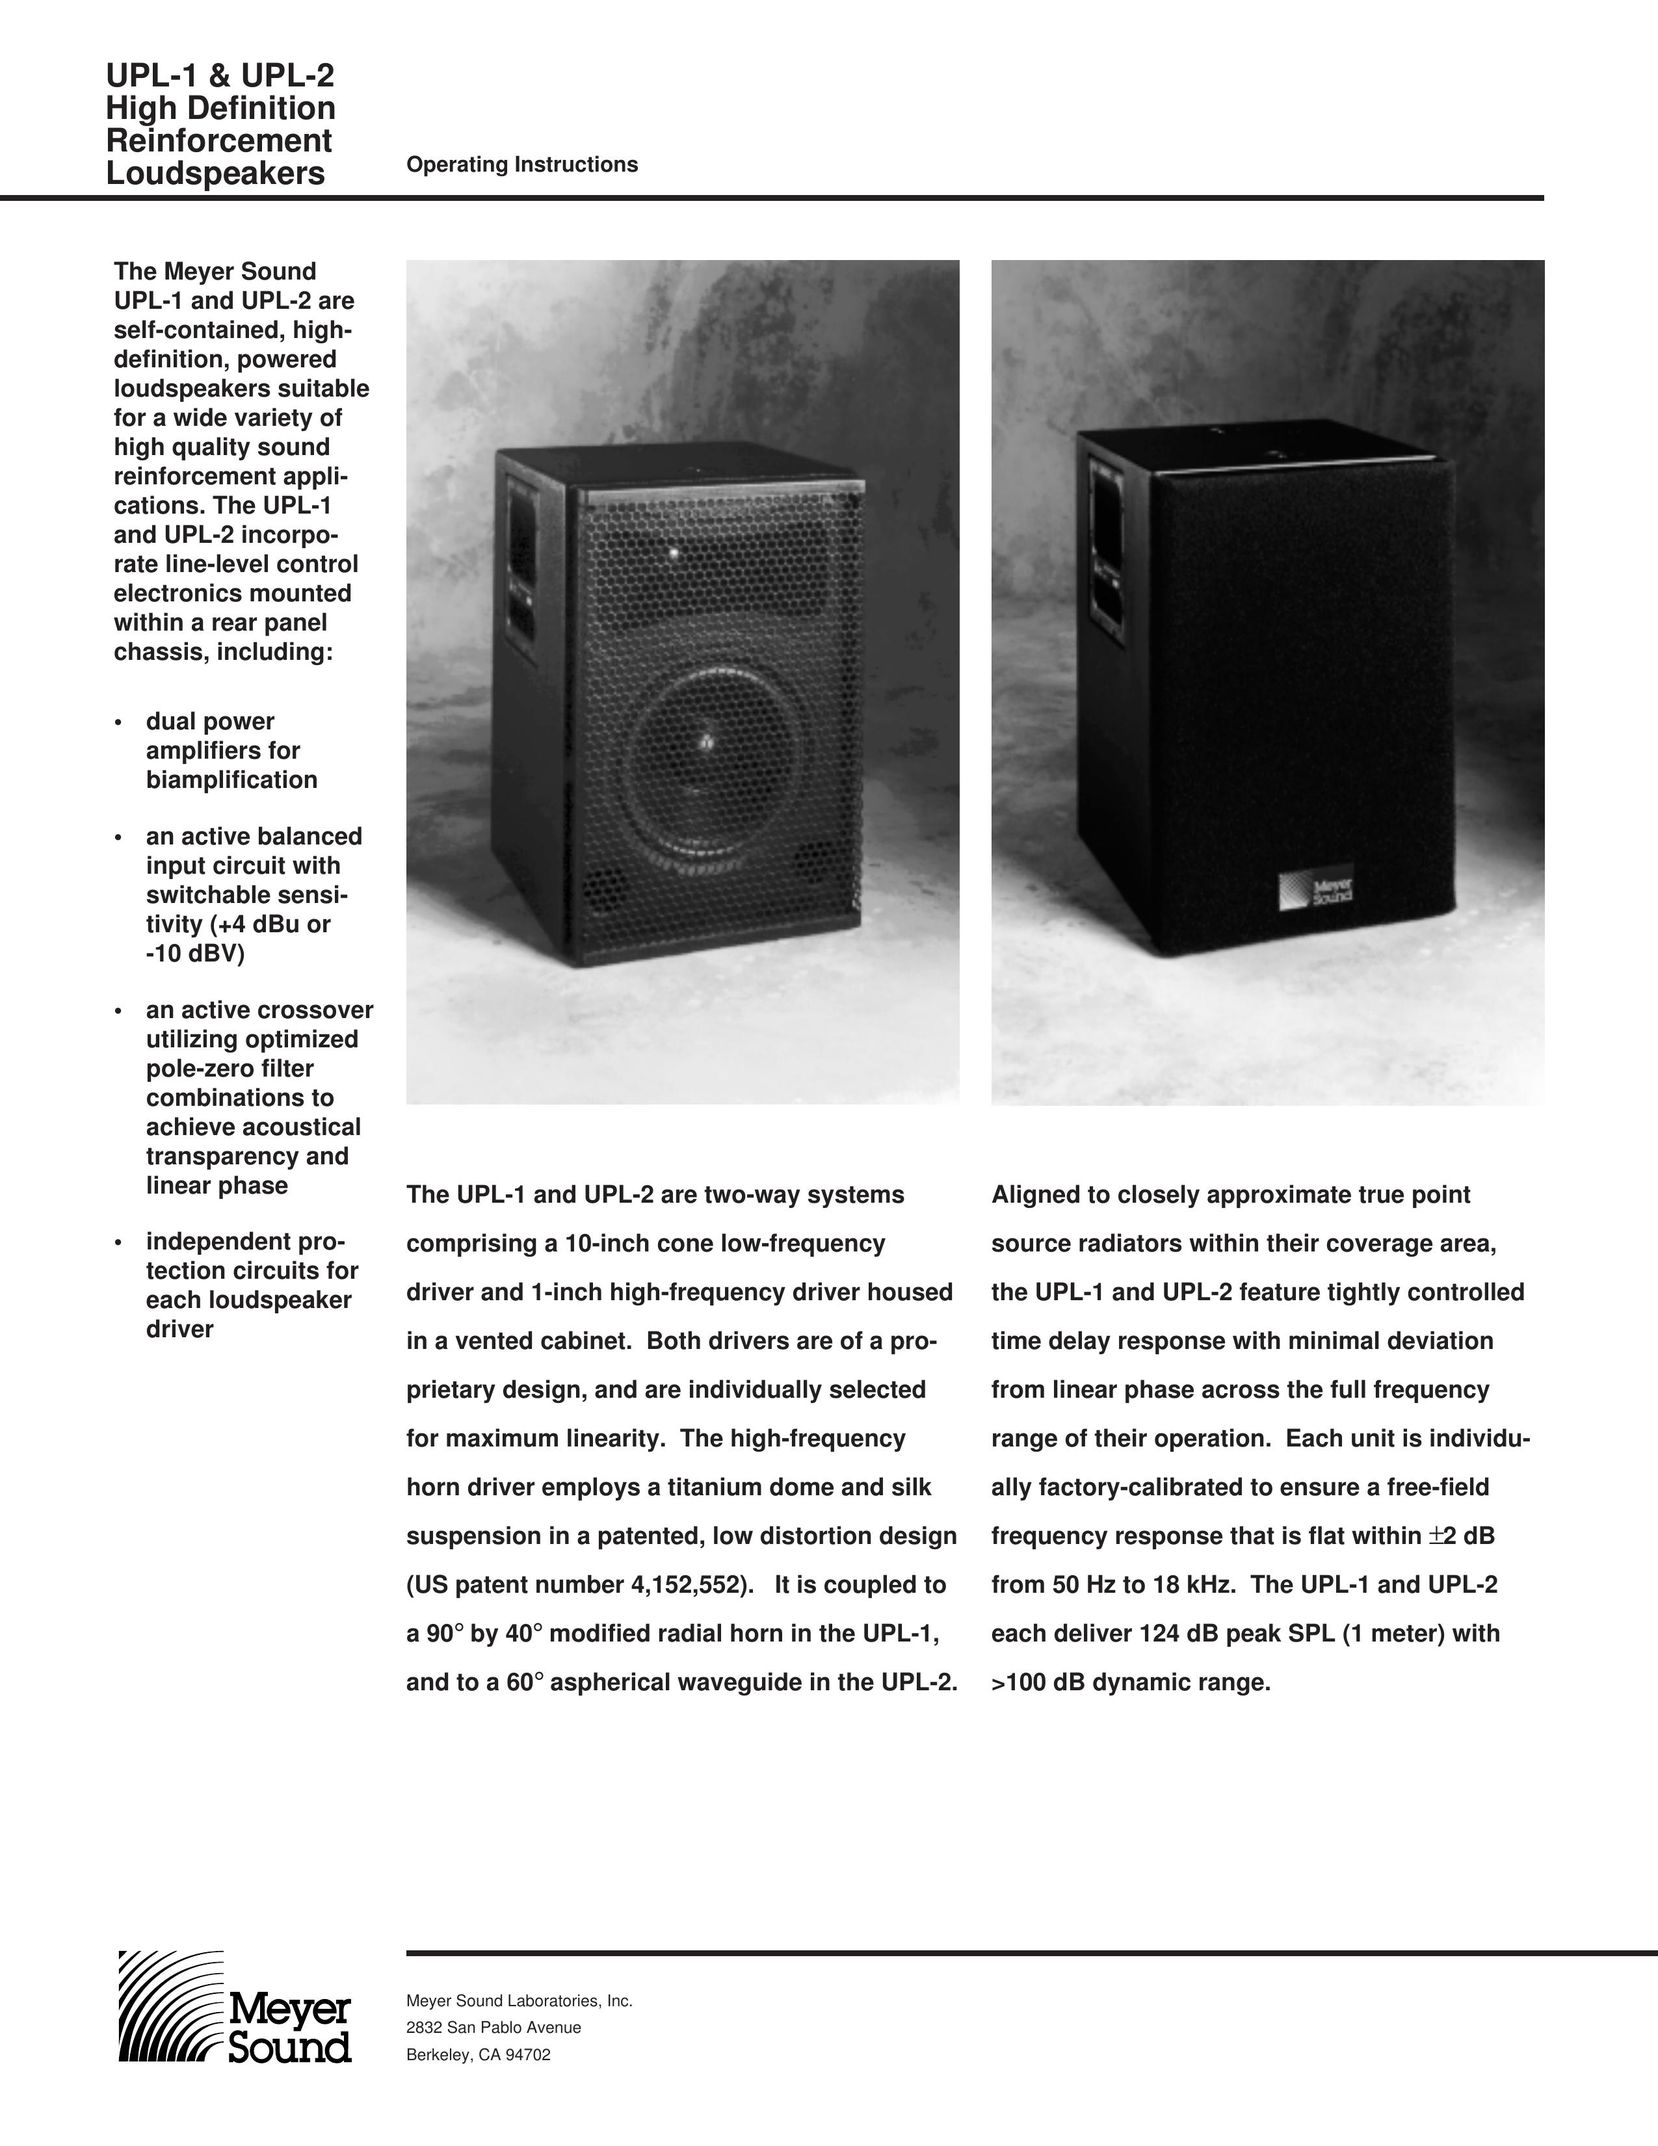 Meyer Sound UPL-2 Car Speaker User Manual